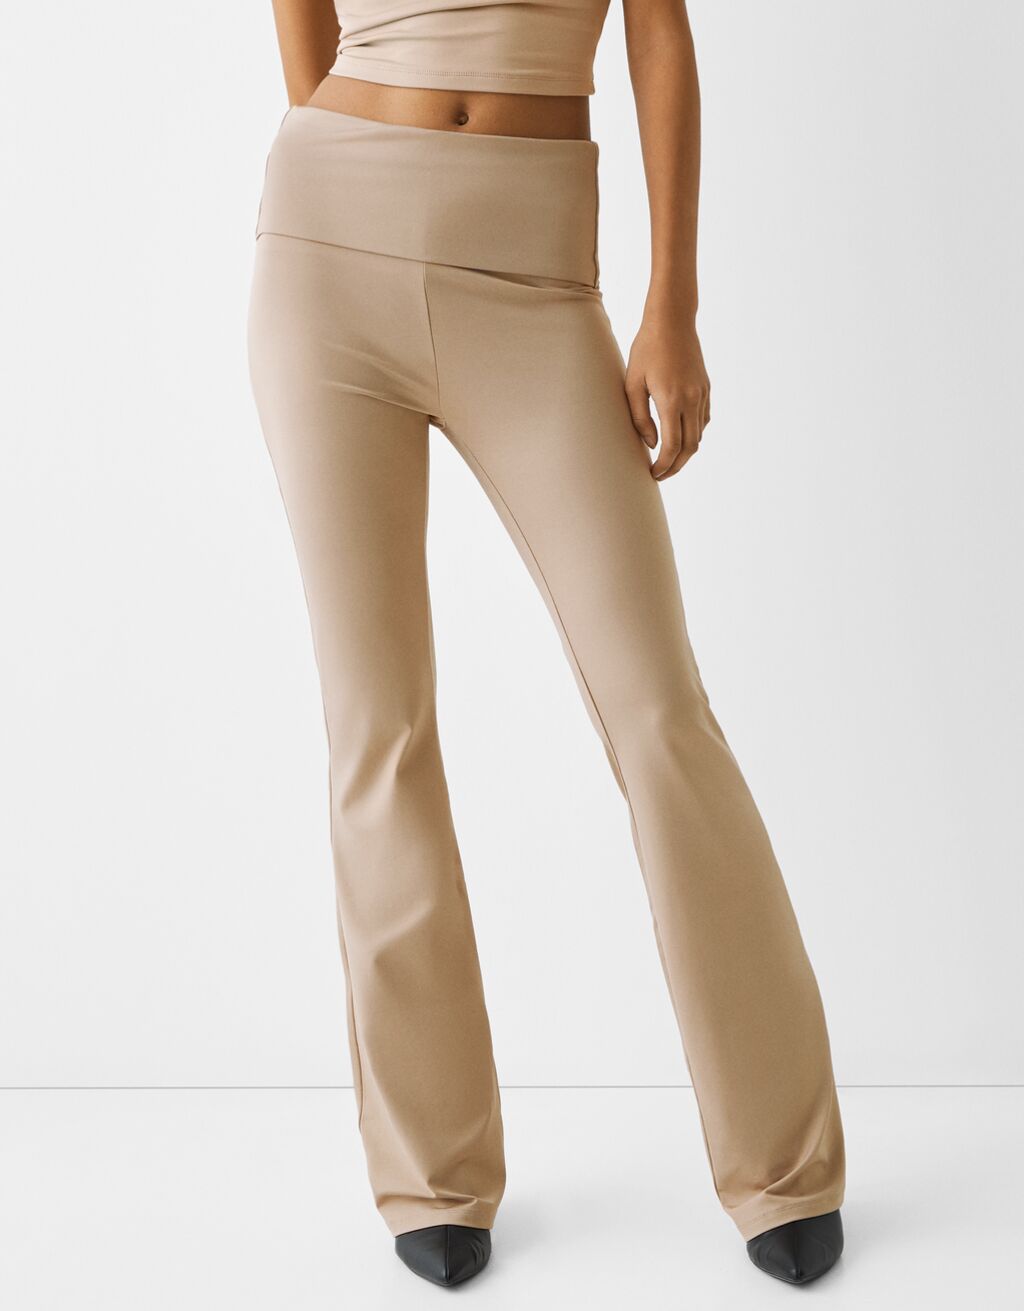 Bershka seamless flare trouser in brown